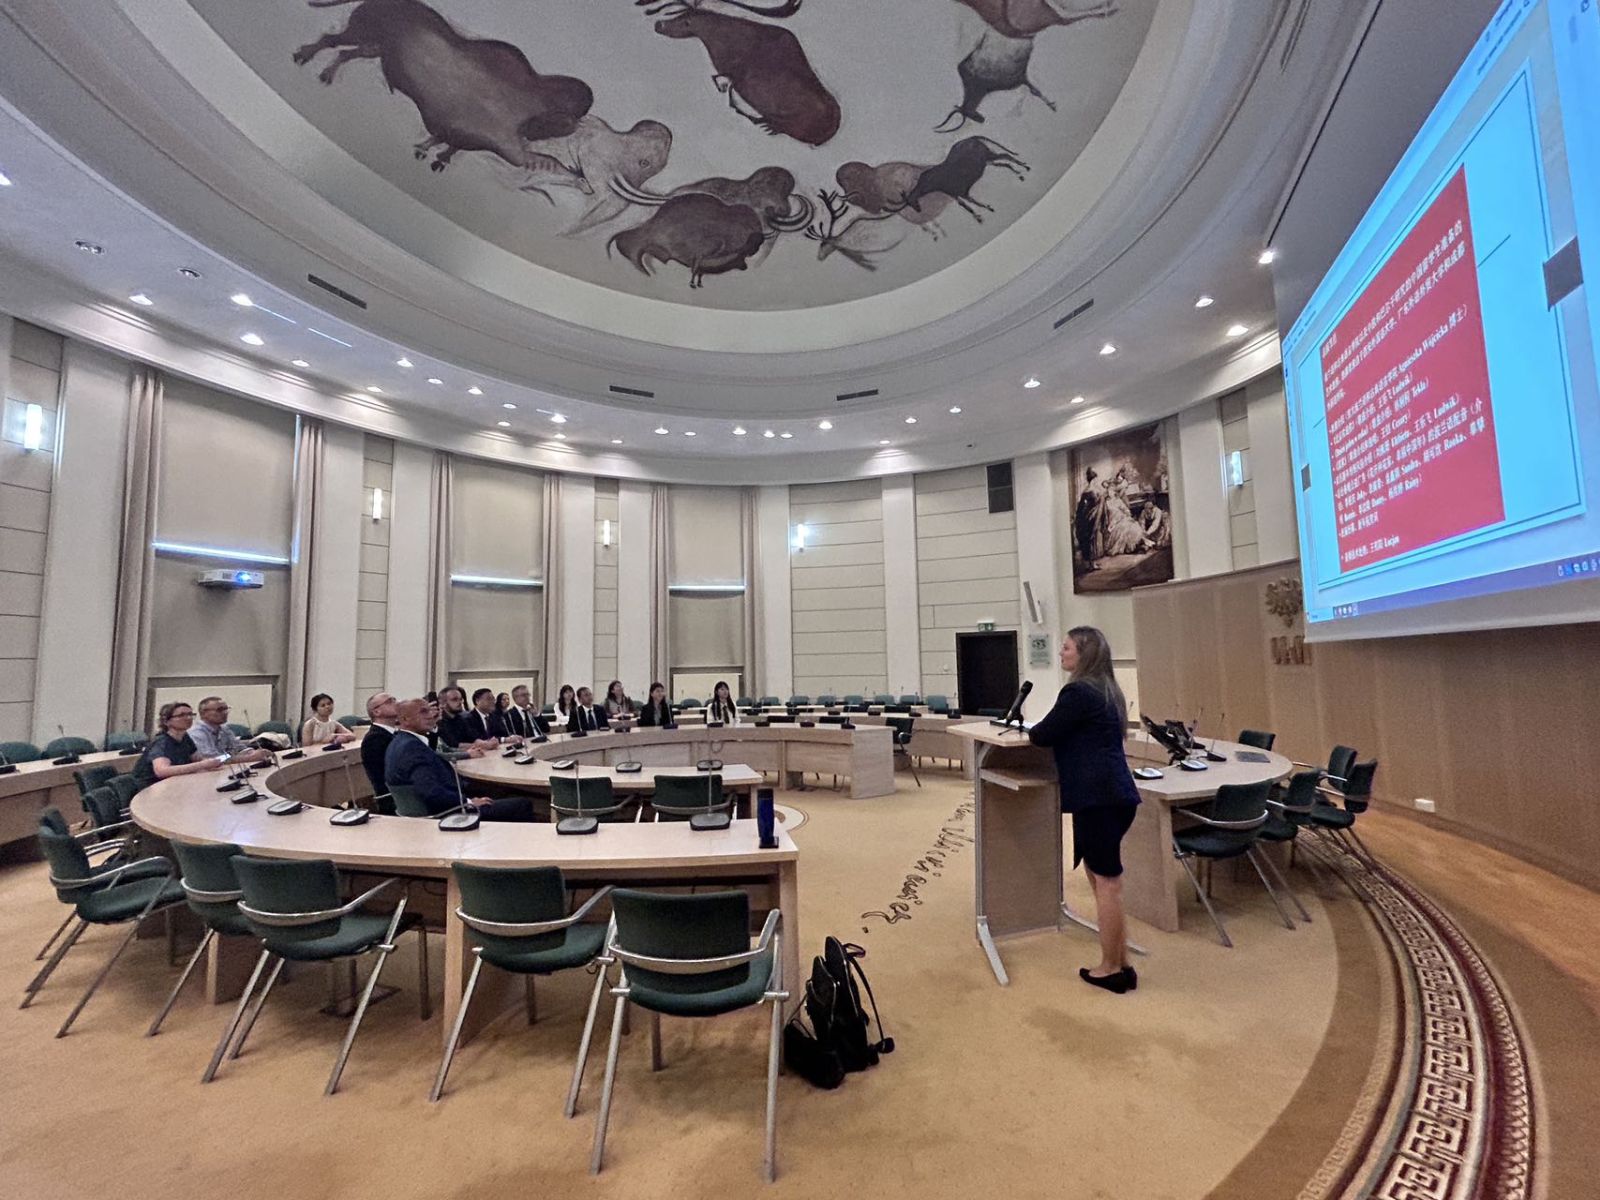 Widok Salonu Mickiewicza, przy mównicy stoi młoda kobieta, wygłaszając prezentację, na dużym ekranie wyświetla się jeden ze slajdów.